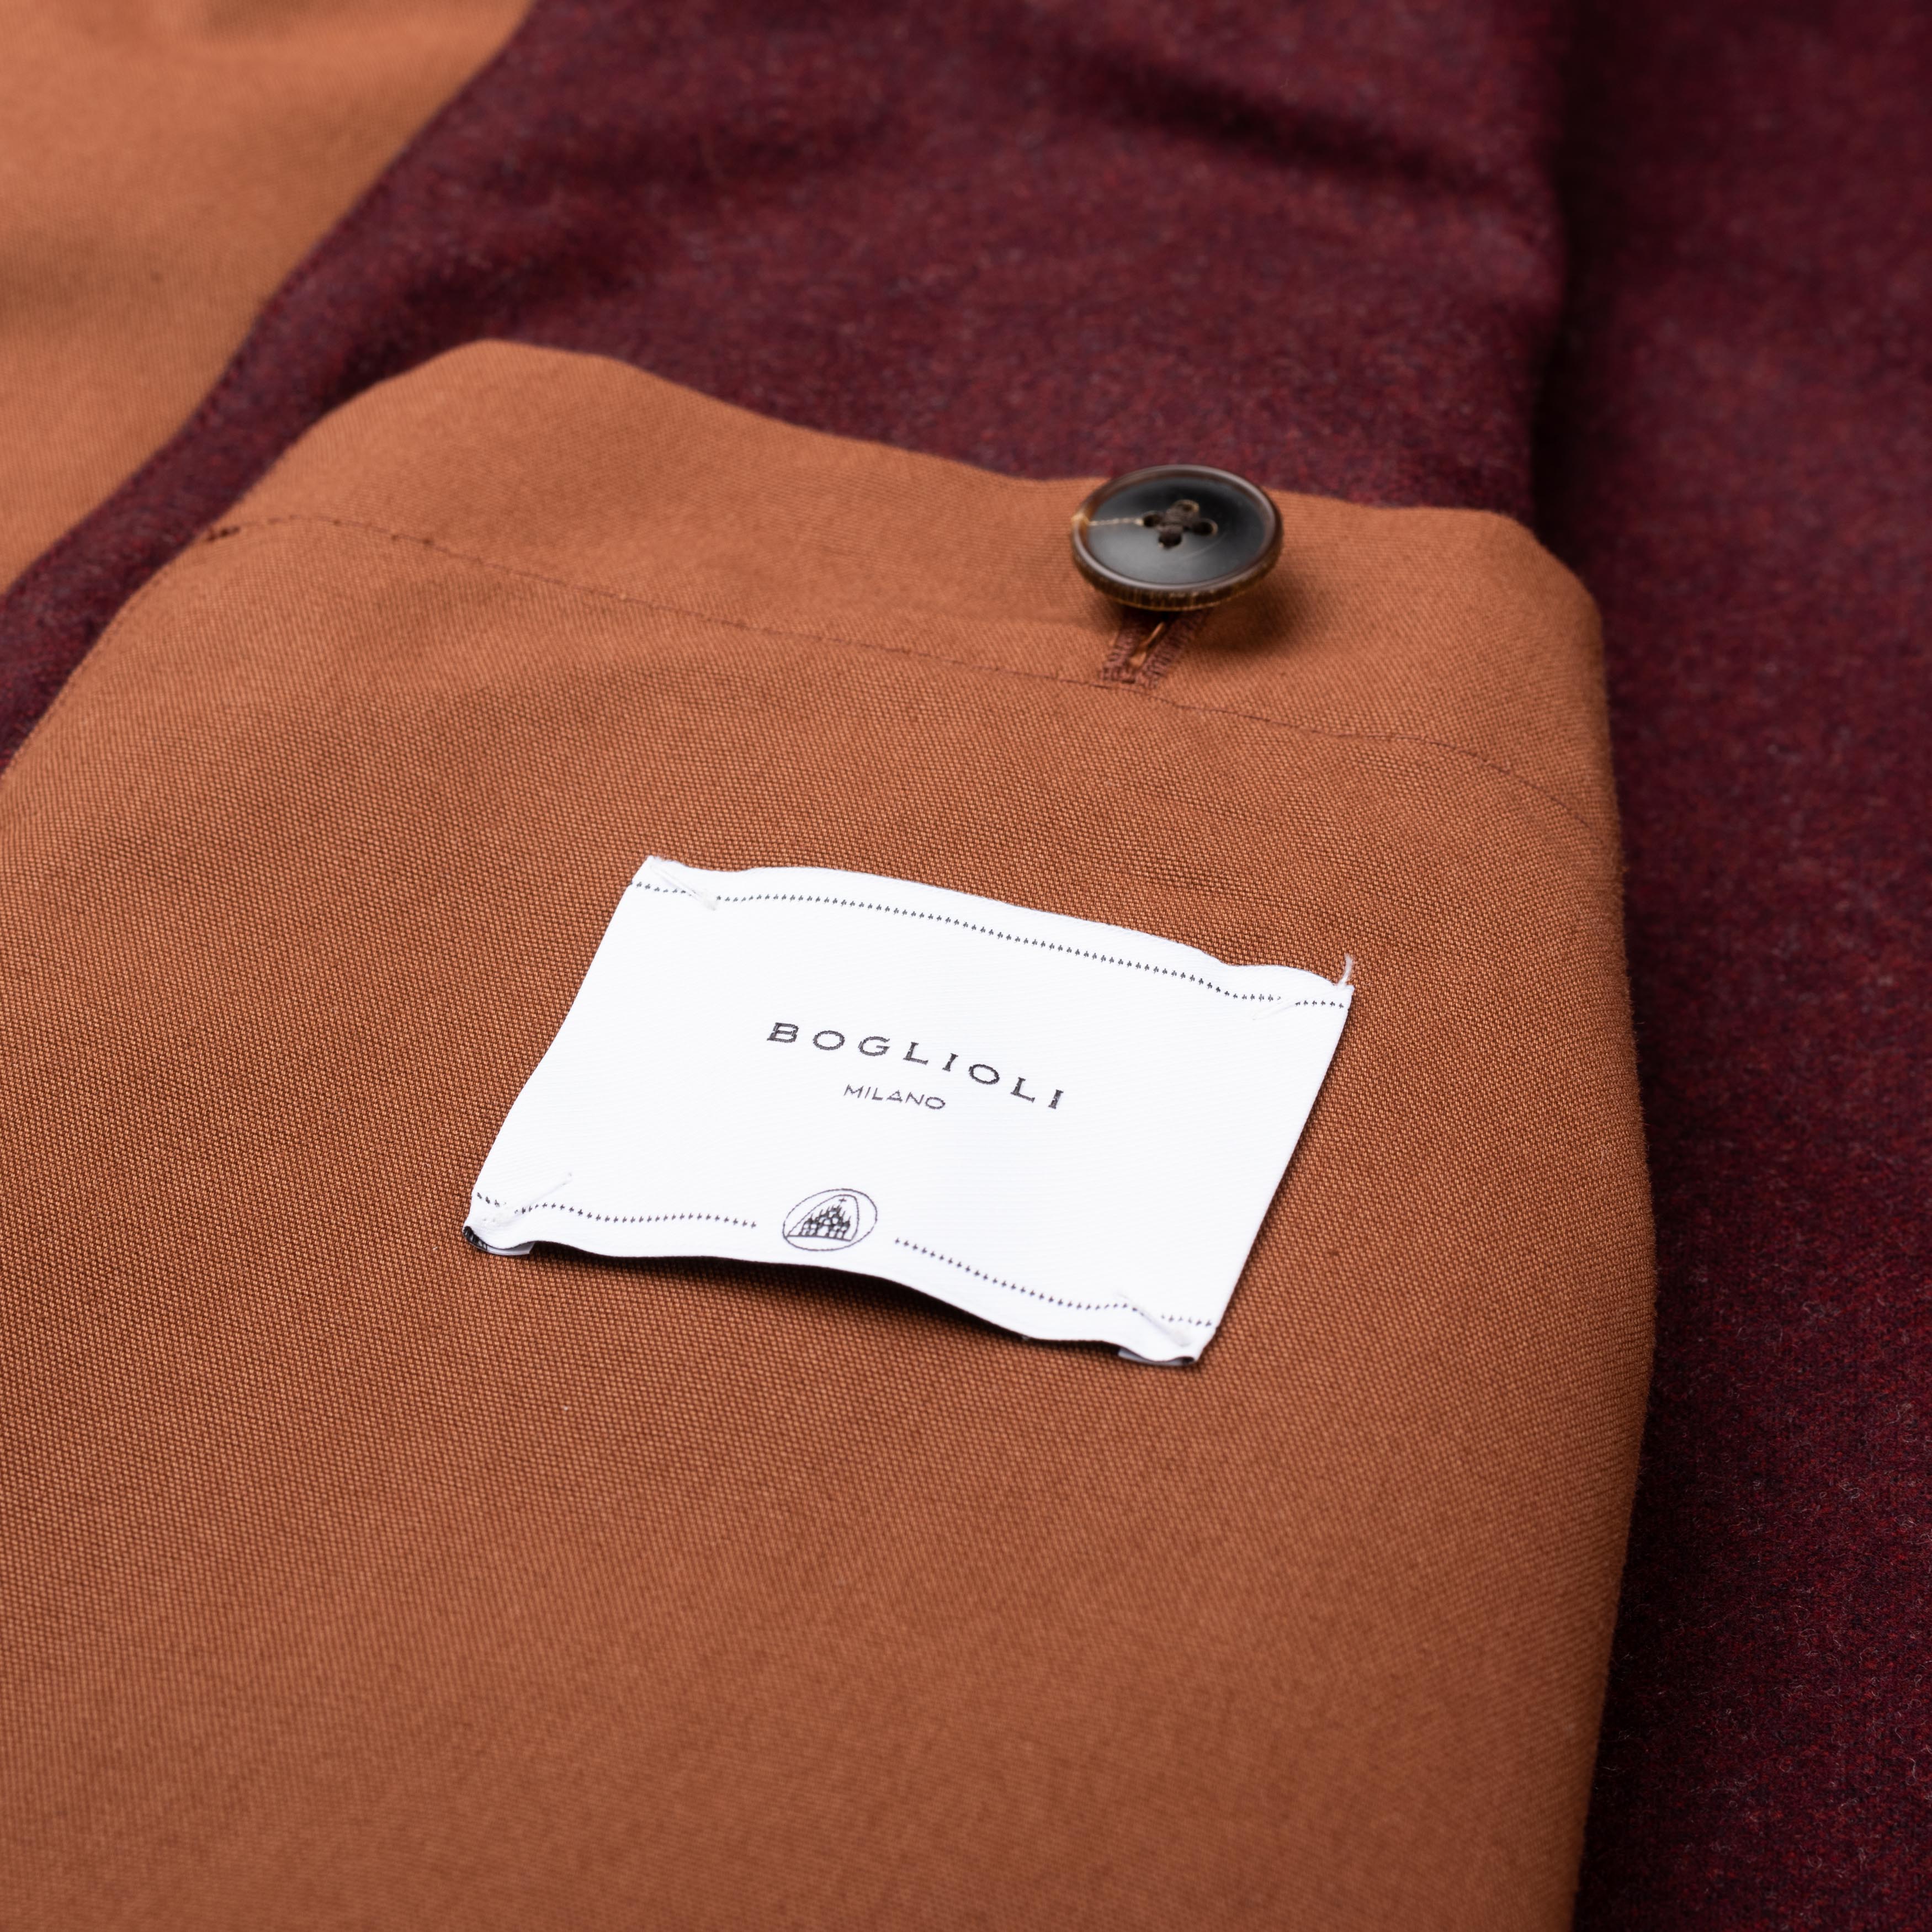 BOGLIOLI Milano "Wear" Brown Cotton Blend Pea Coat NEW US 48 / 4XL